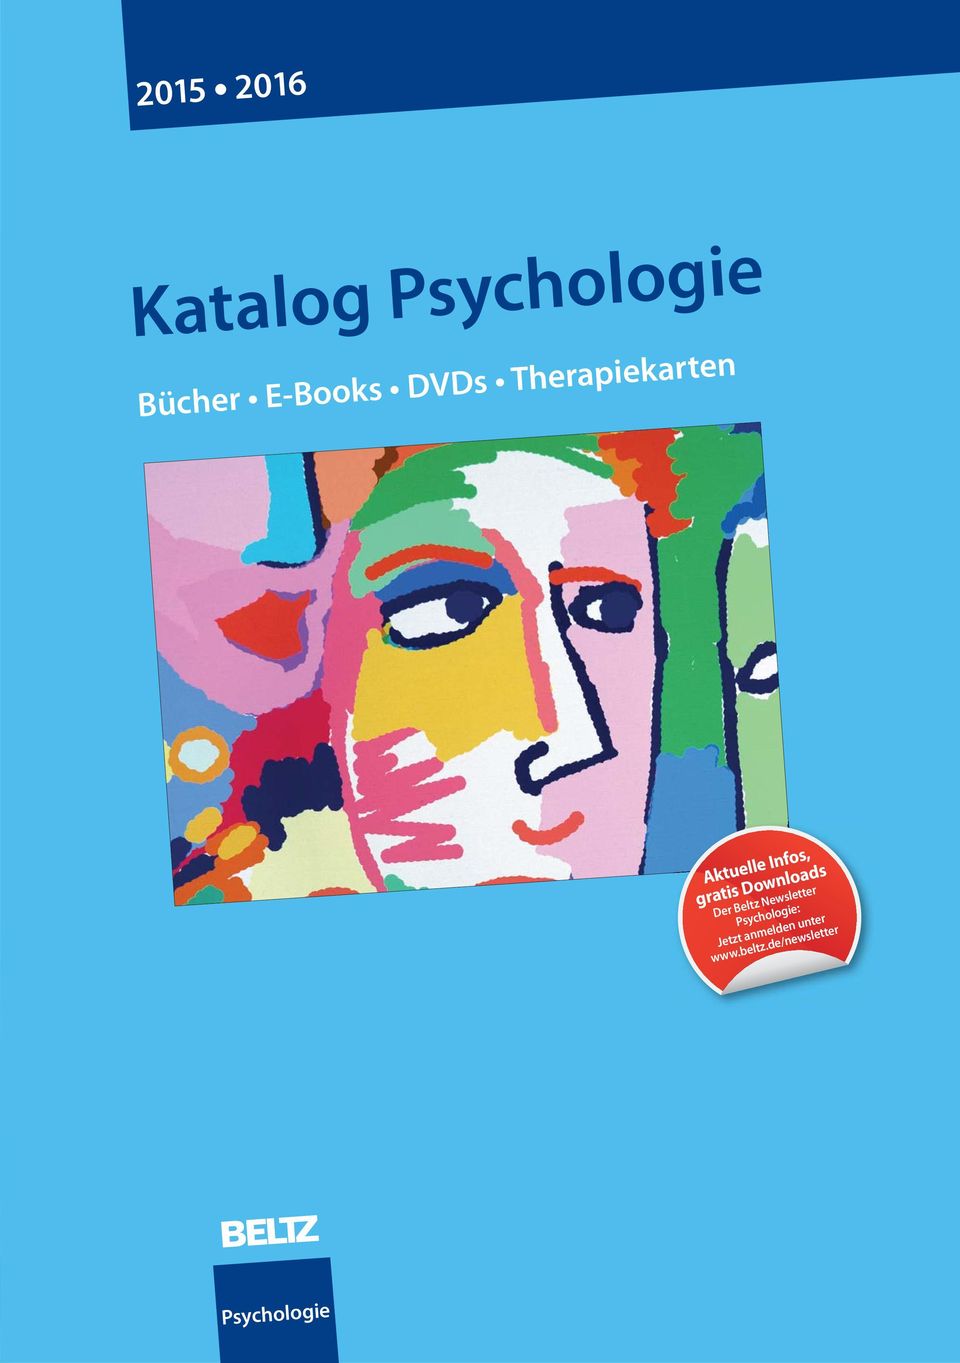 Downloads Der Beltz Newsletter Psychologie: